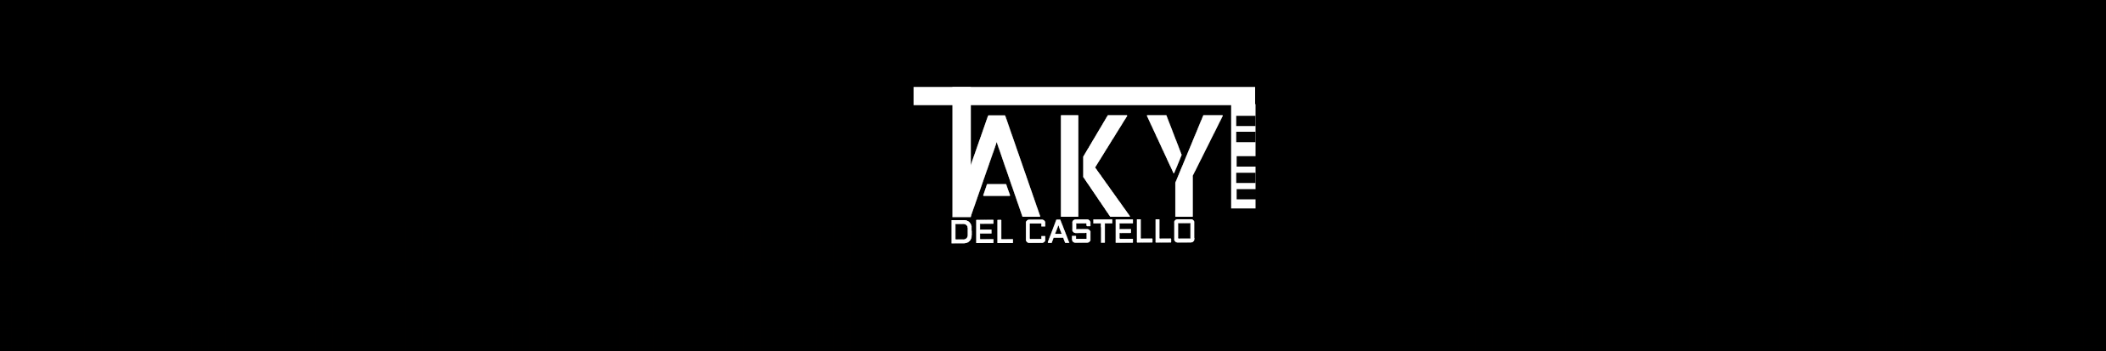 TAKY DEL CASTELLO